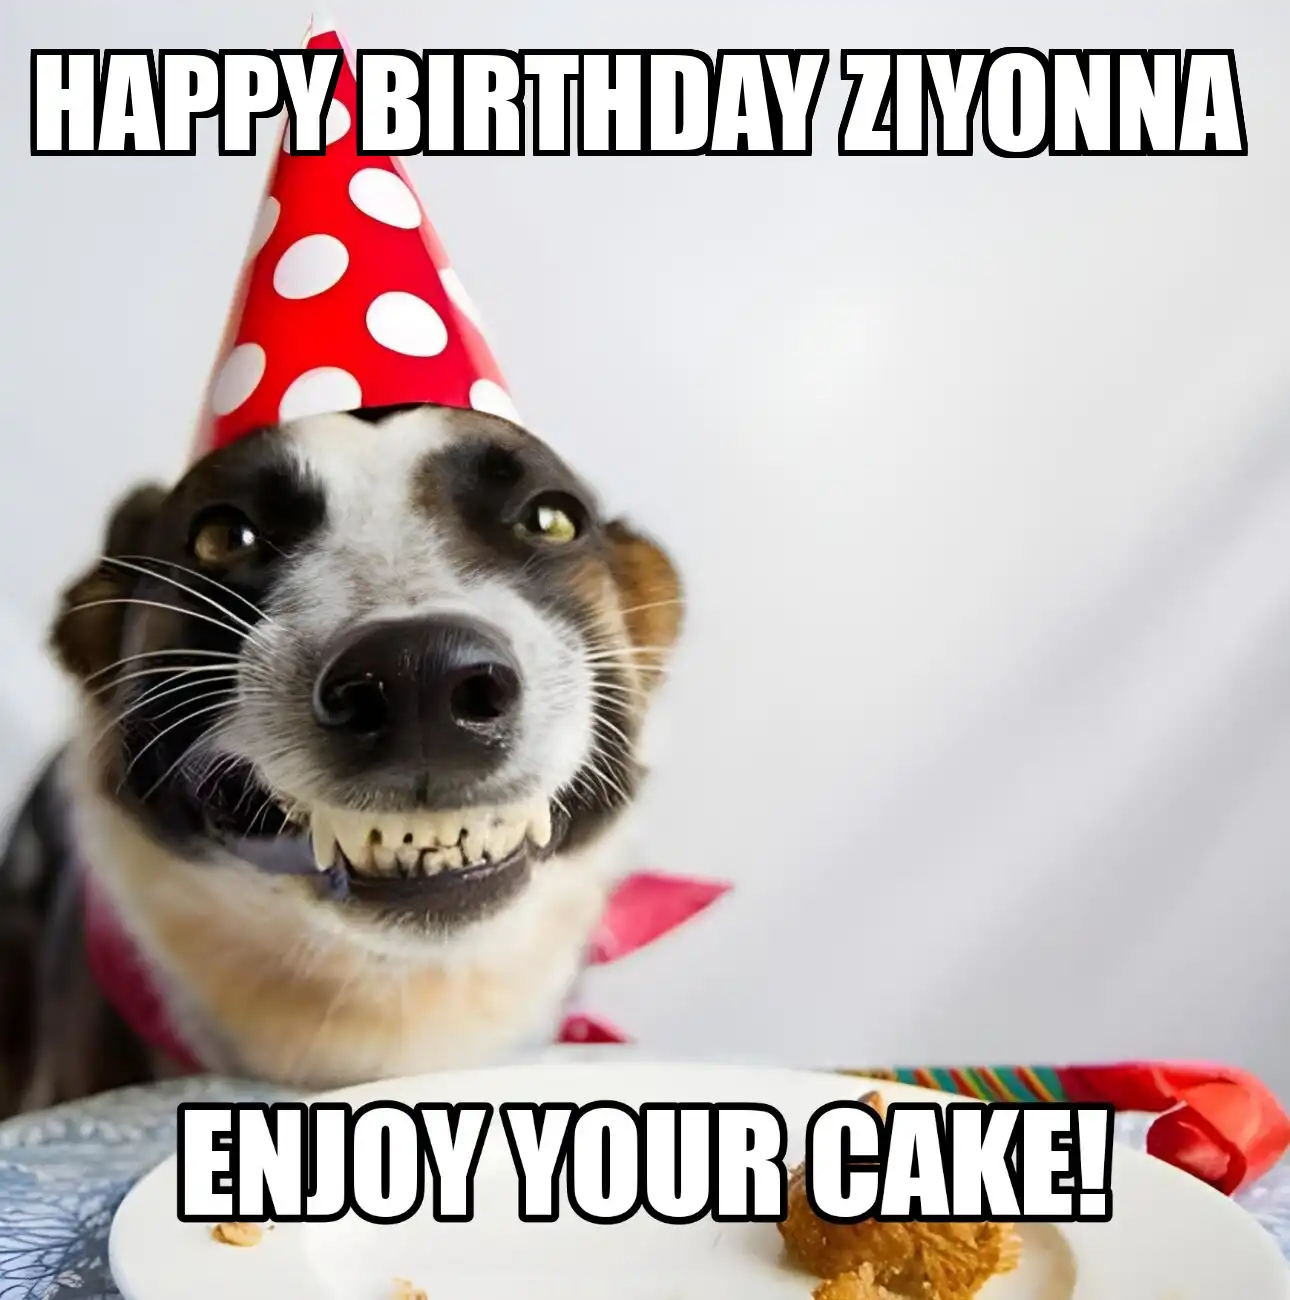 Happy Birthday Ziyonna Enjoy Your Cake Dog Meme